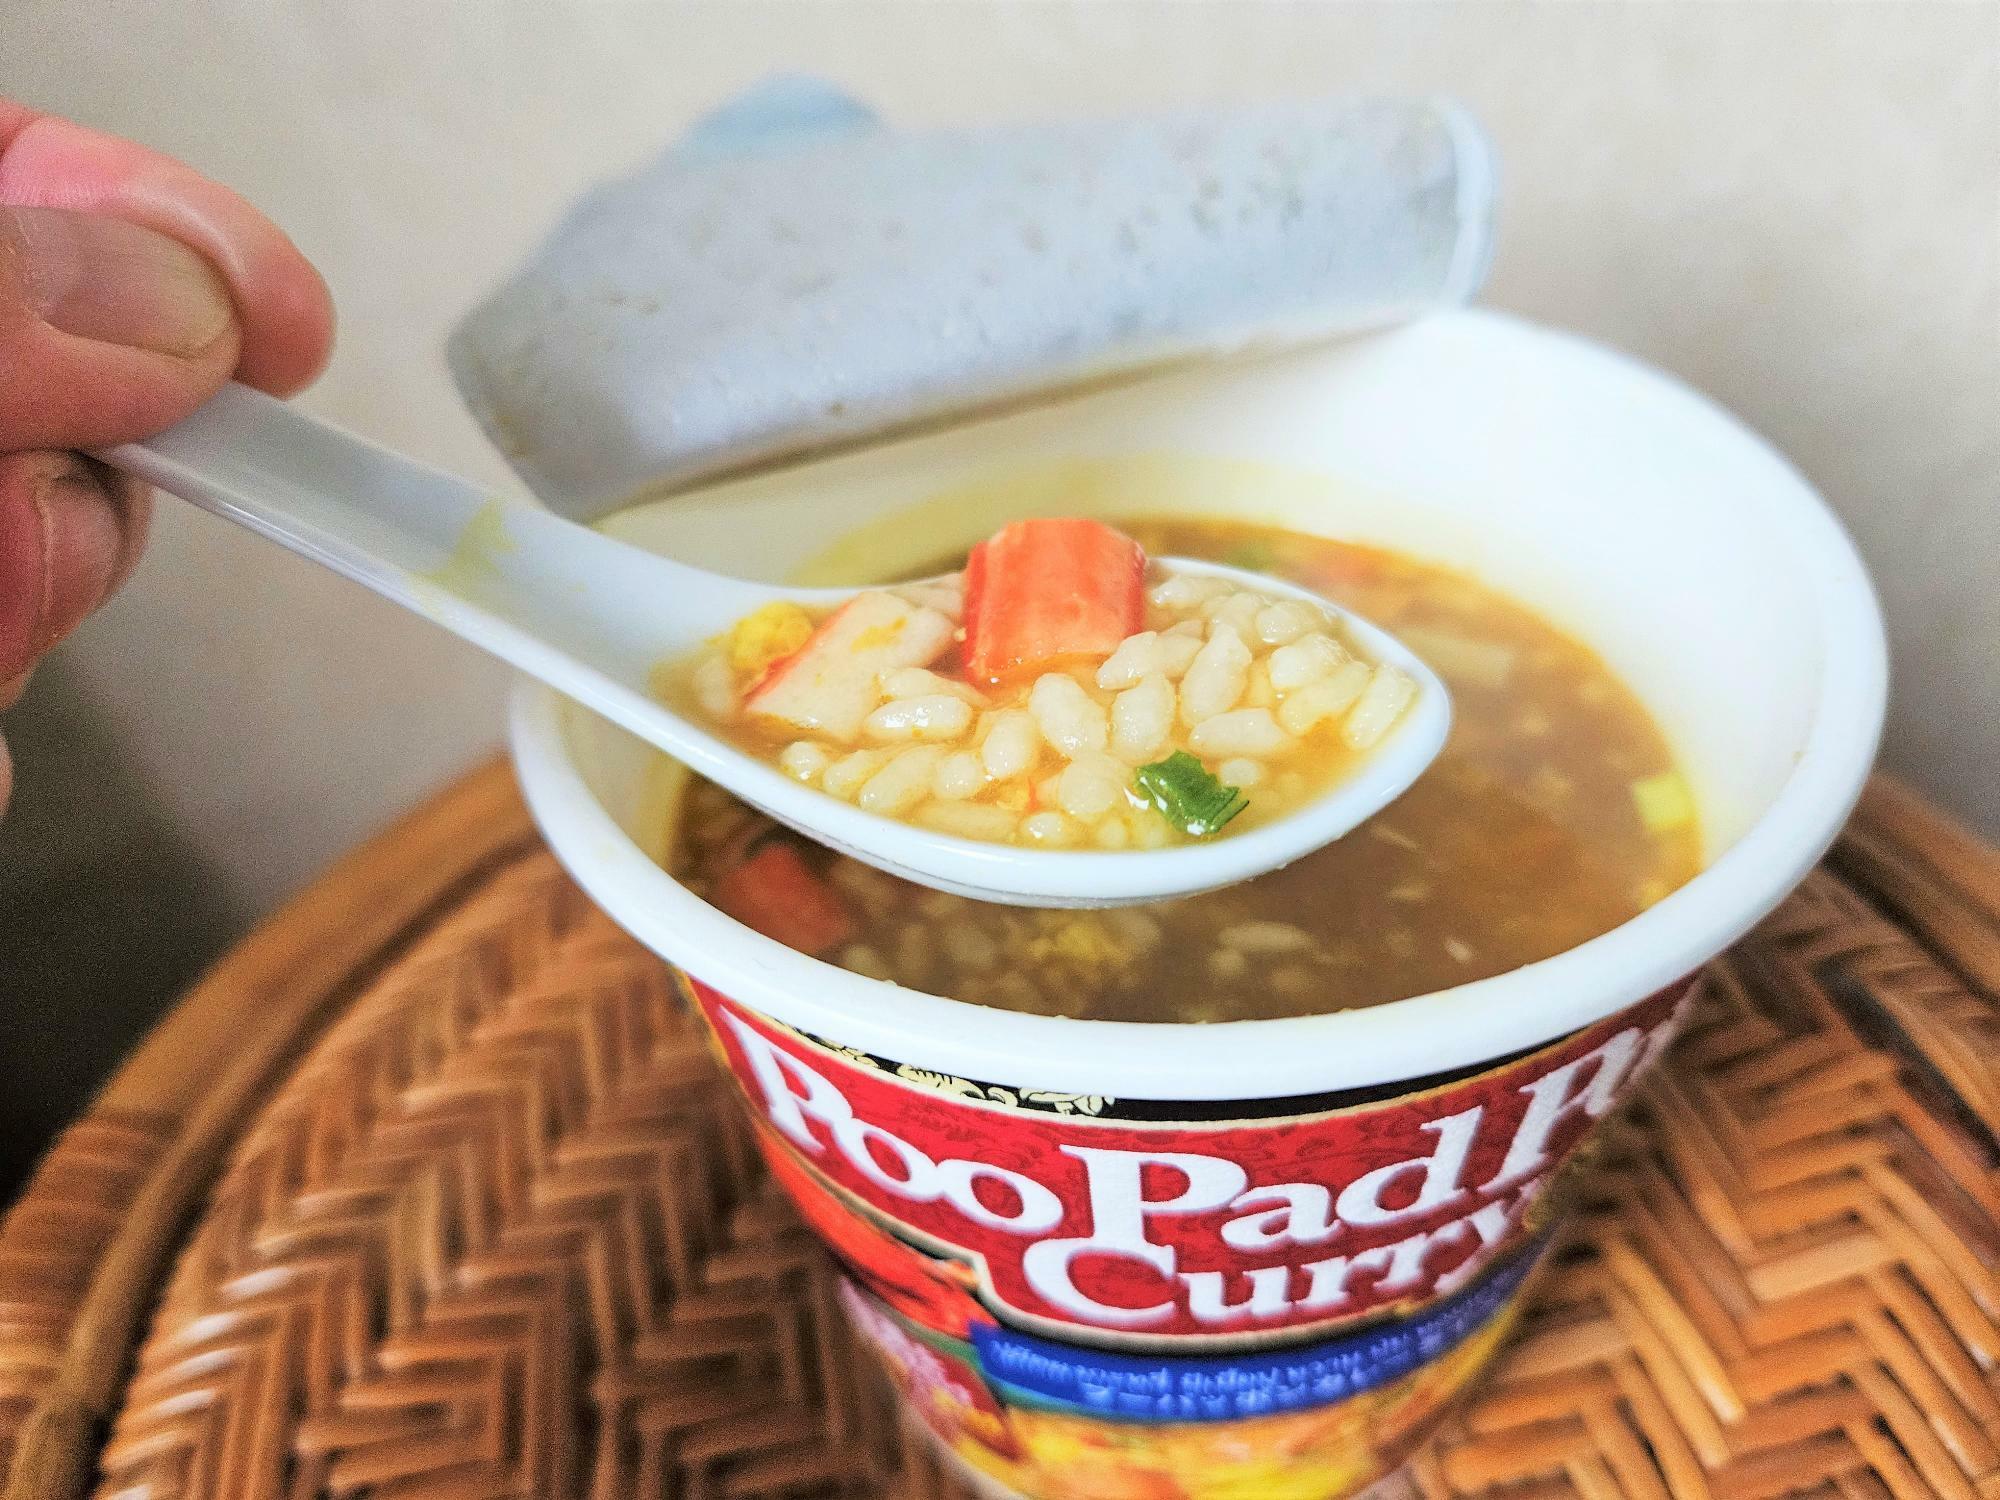 ふんわりとカニの風味が広がり、柔らかくなった米にカレー風味のスープが染み込みます。